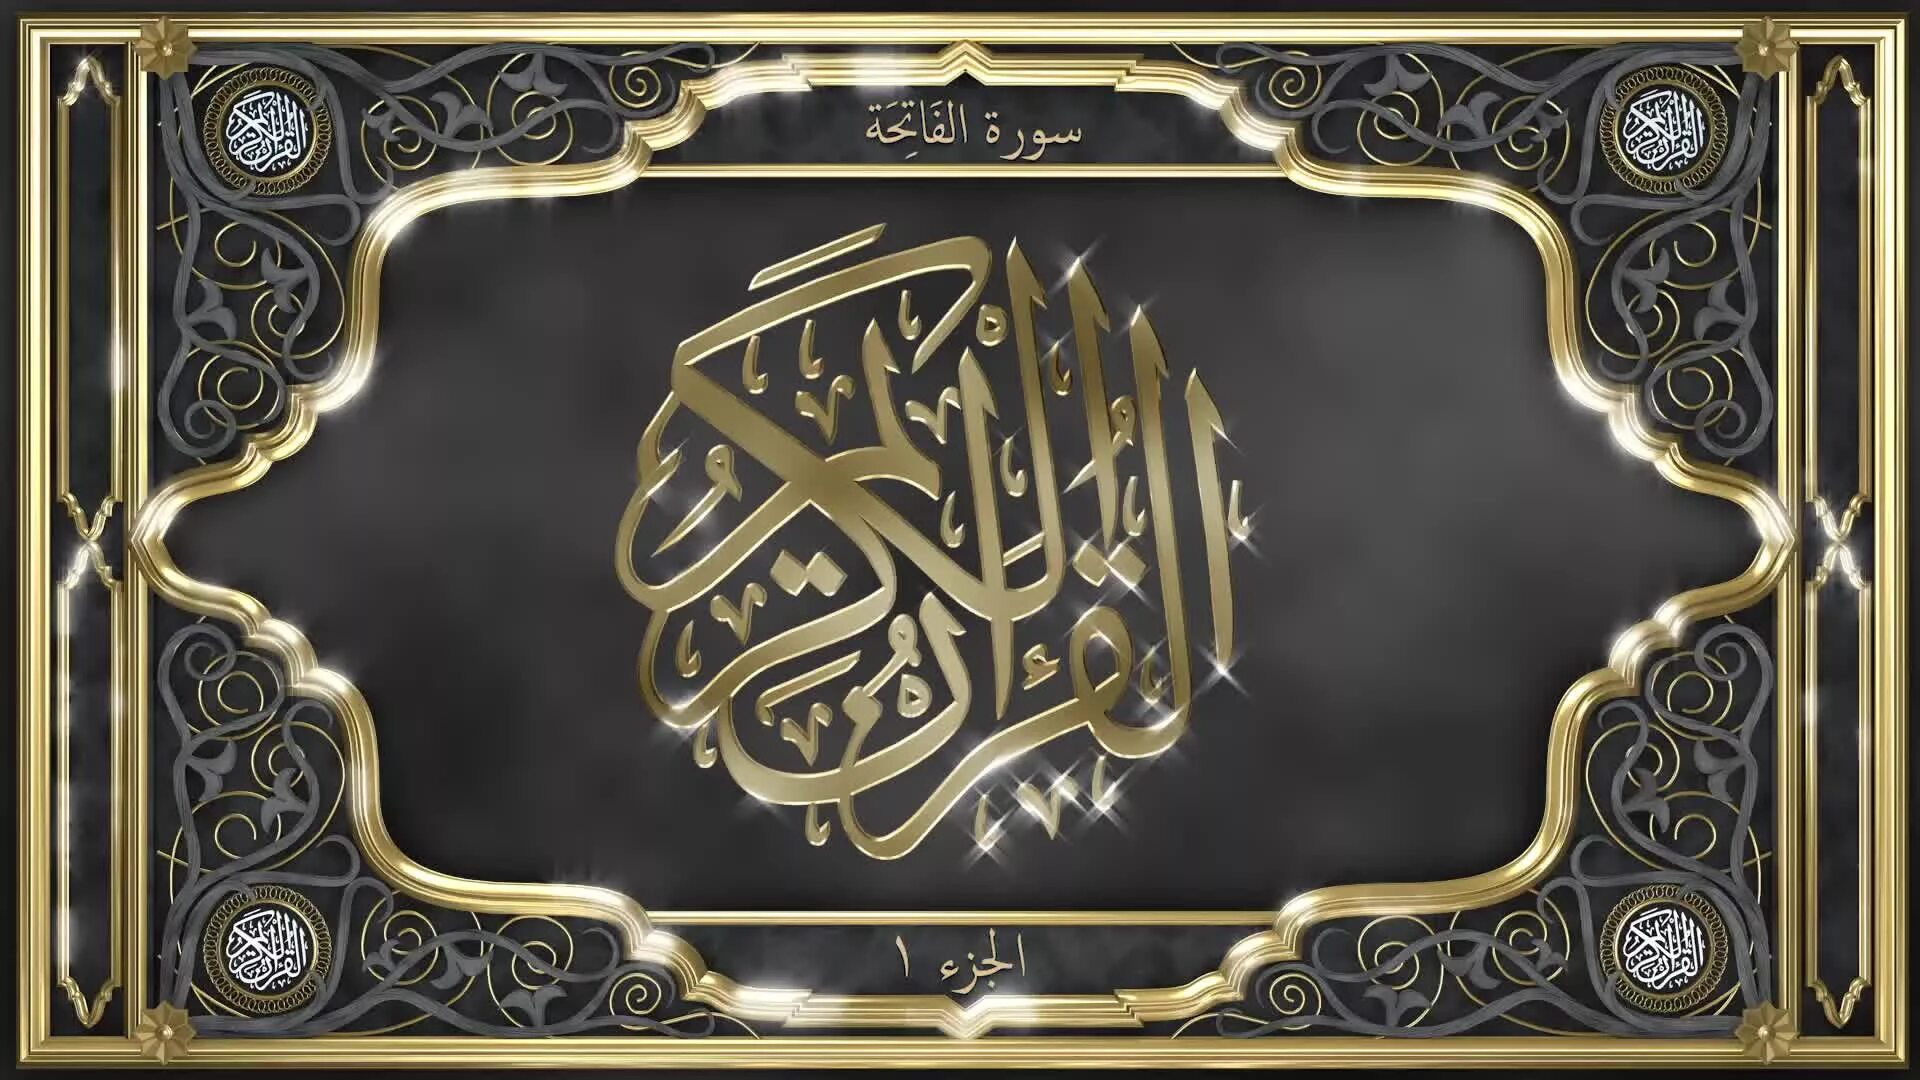 Аль Фатиха каллиграфия на арабском. Сура Аль Фатиха каллиграфия. Рамка для Корана. Сура Аль Фатиха на арабском.